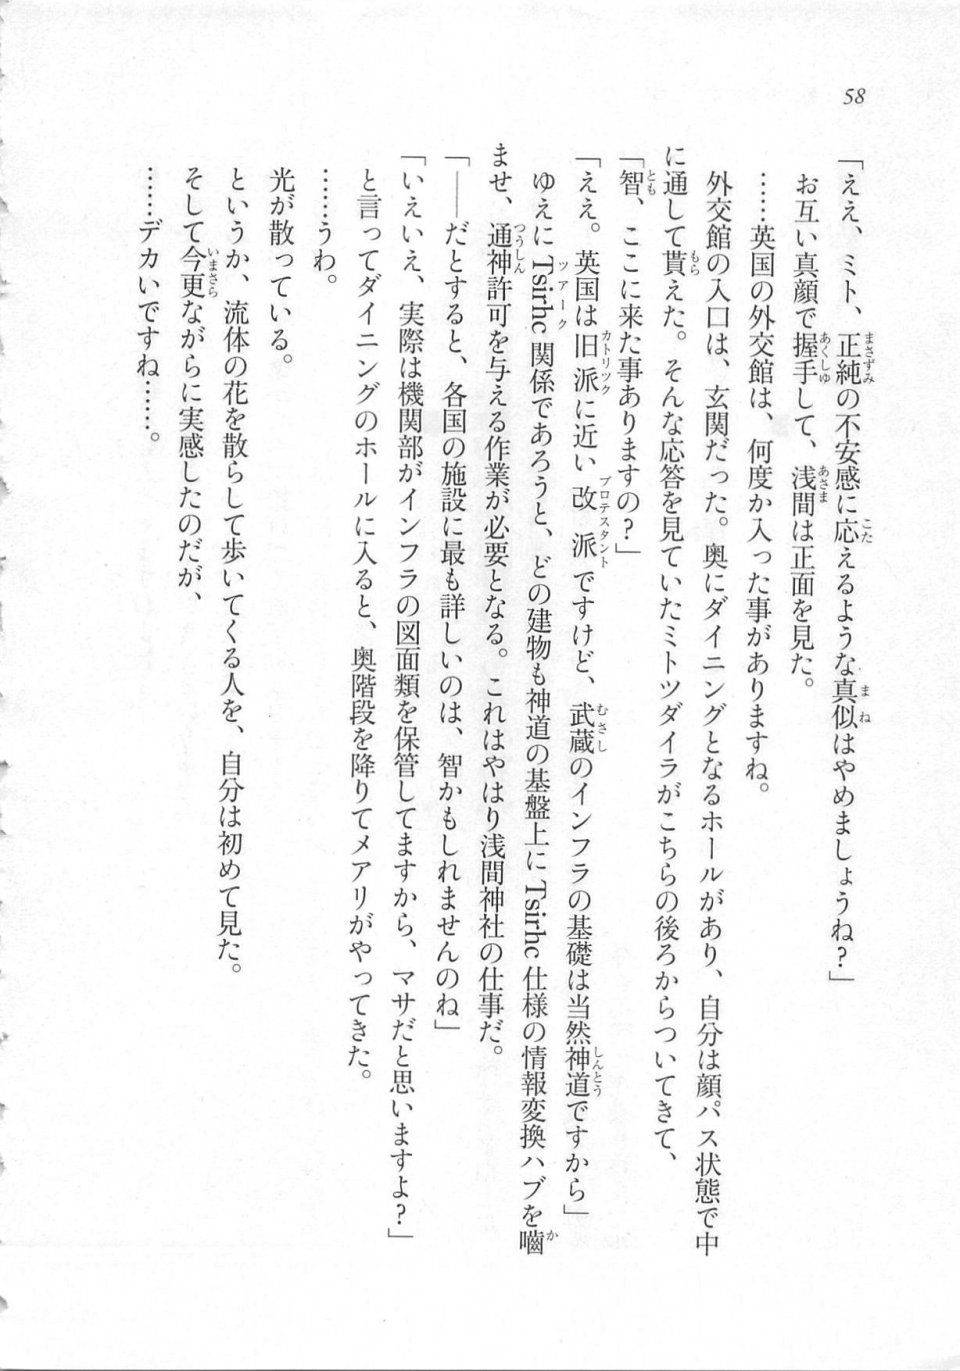 Kyoukai Senjou no Horizon LN Sidestory Vol 3 - Photo #62